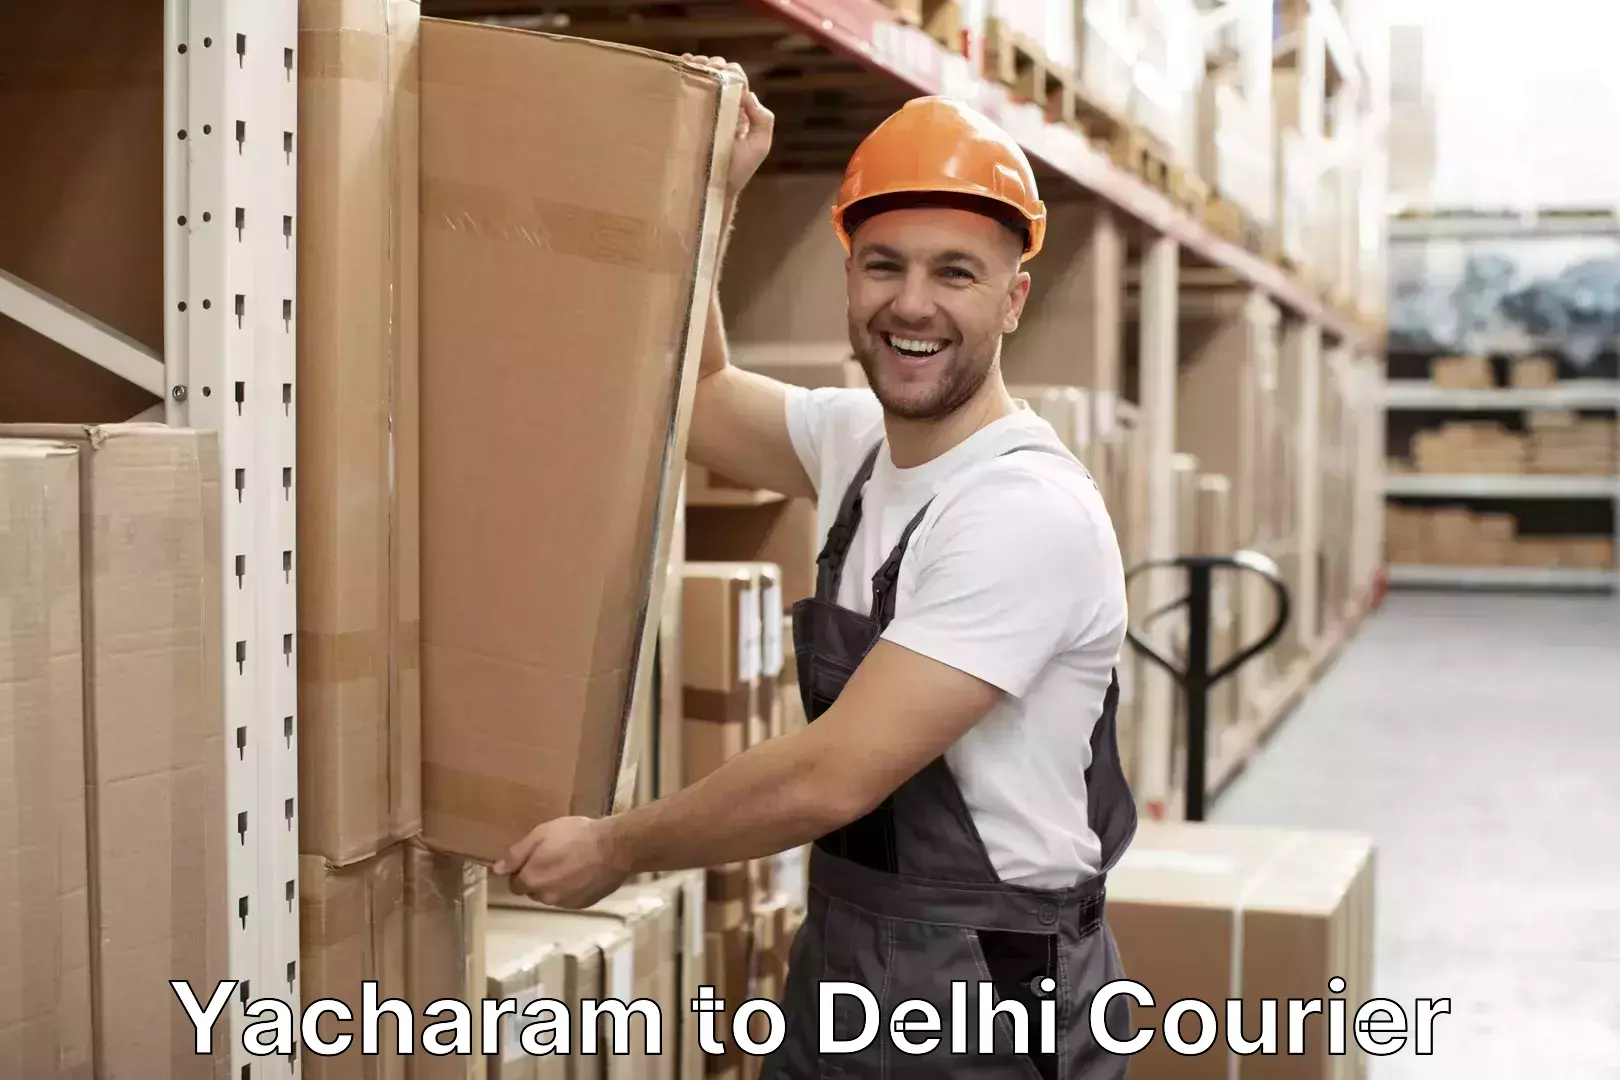 Luggage shipment processing Yacharam to Delhi